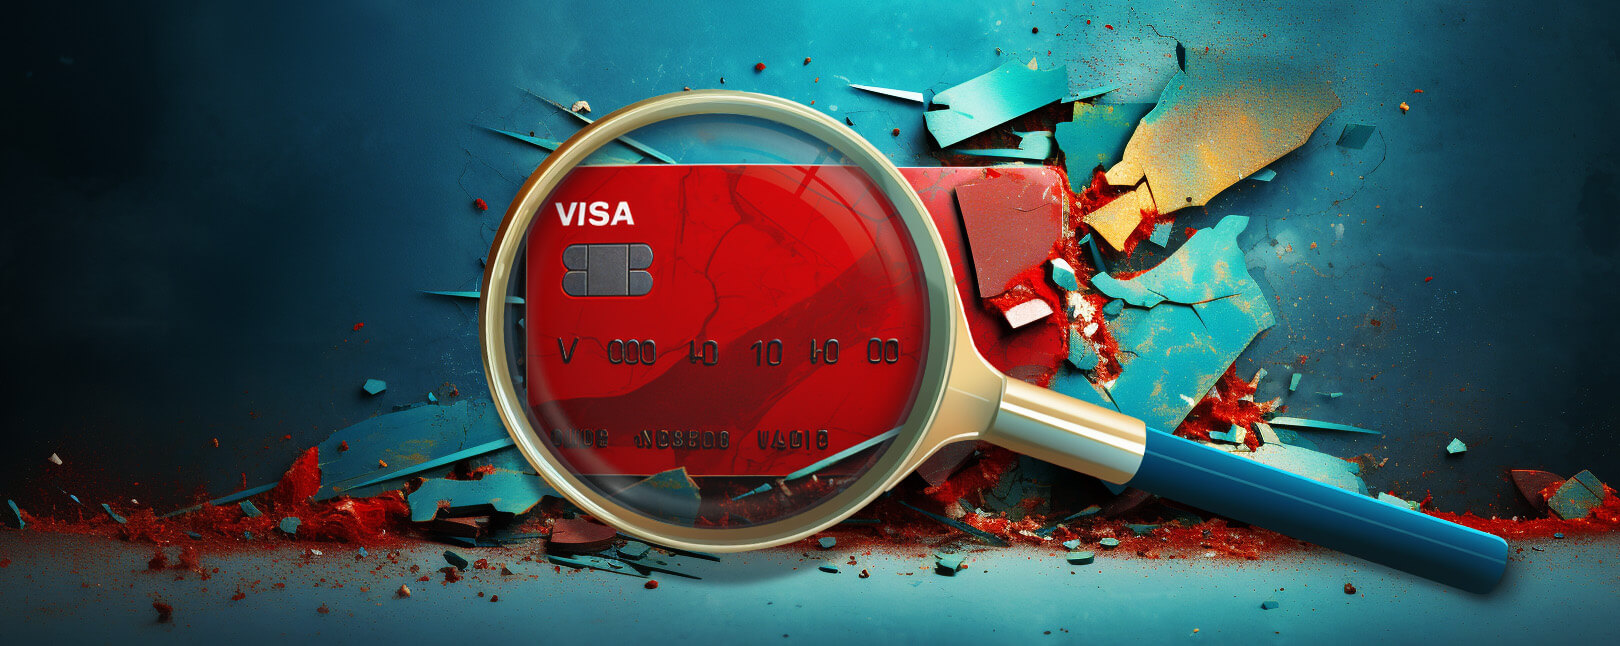 Visa Chargeback Threshold